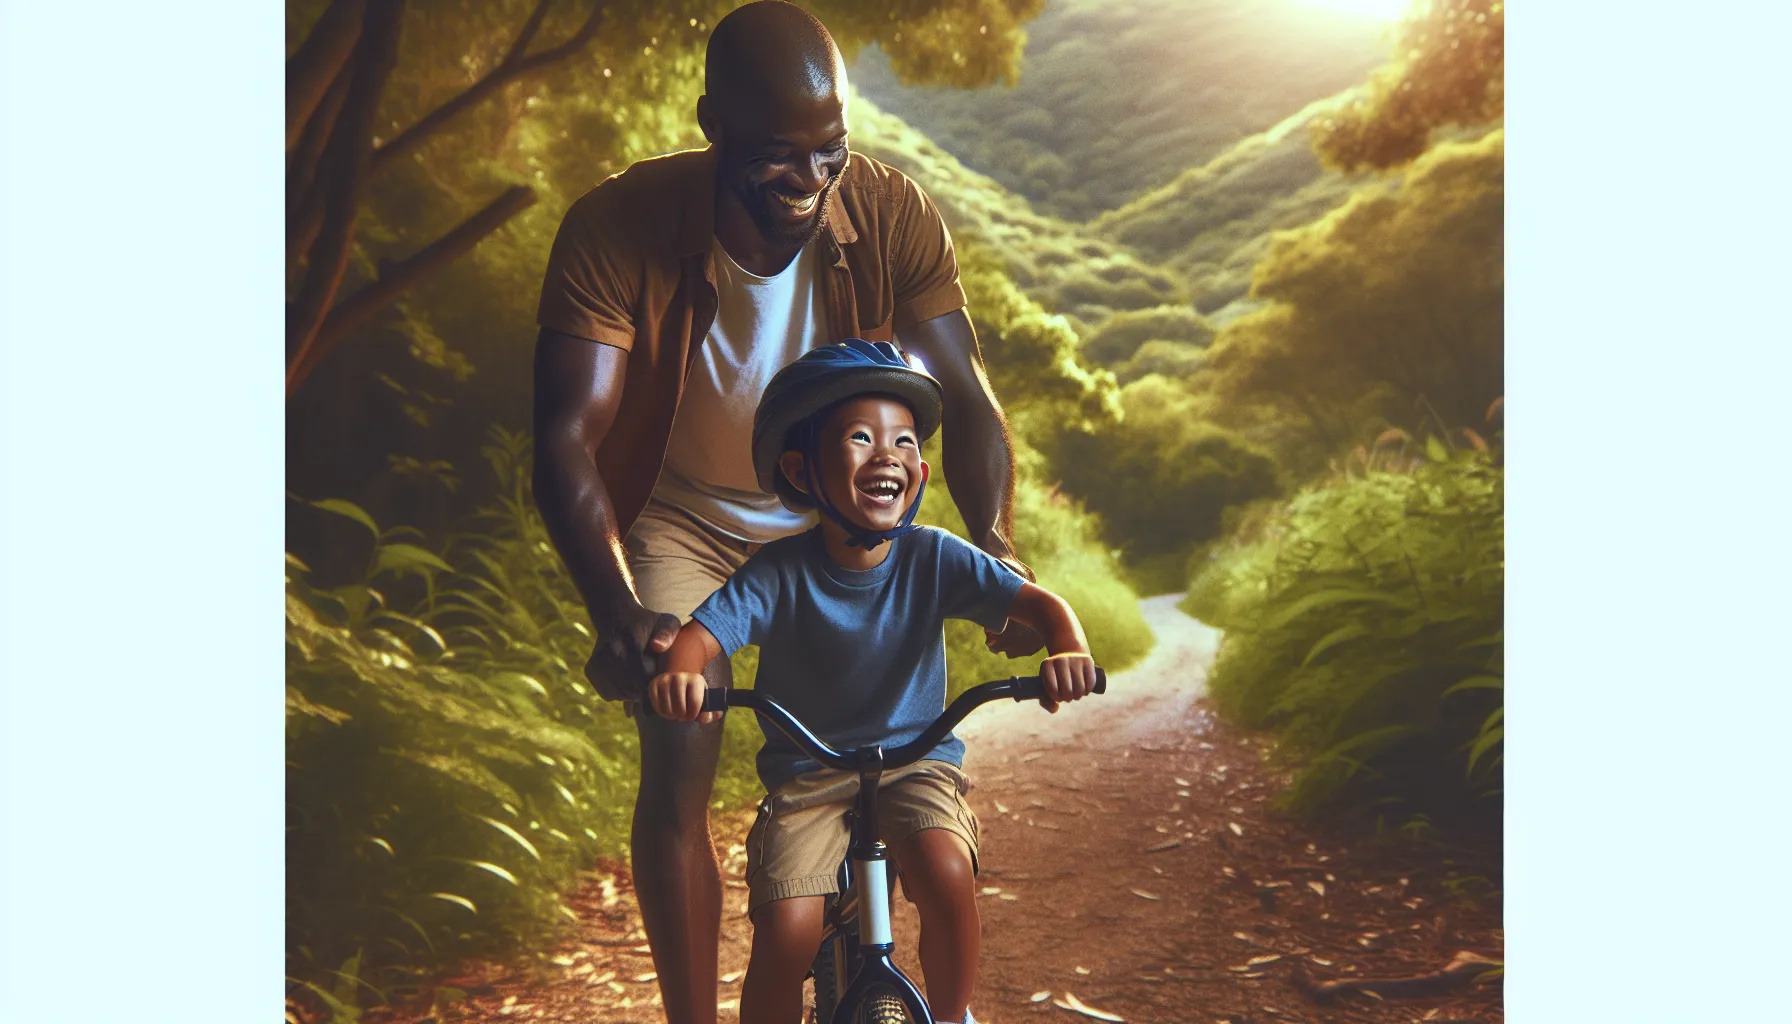 Incentivar seu filho a andar de bicicleta pode ser uma atividade divertida e saudável. Aqui estão algumas maneiras de fazê-lo:

1. Mostre entusiasmo: Demonstre interesse pela bicicleta e mostre ao seu filho o quanto é divertido andar de bike. Fale sobre as vantagens, como a liberdade de se locomover e a oportunidade de explorar novos lugares.

2. Compre uma bic